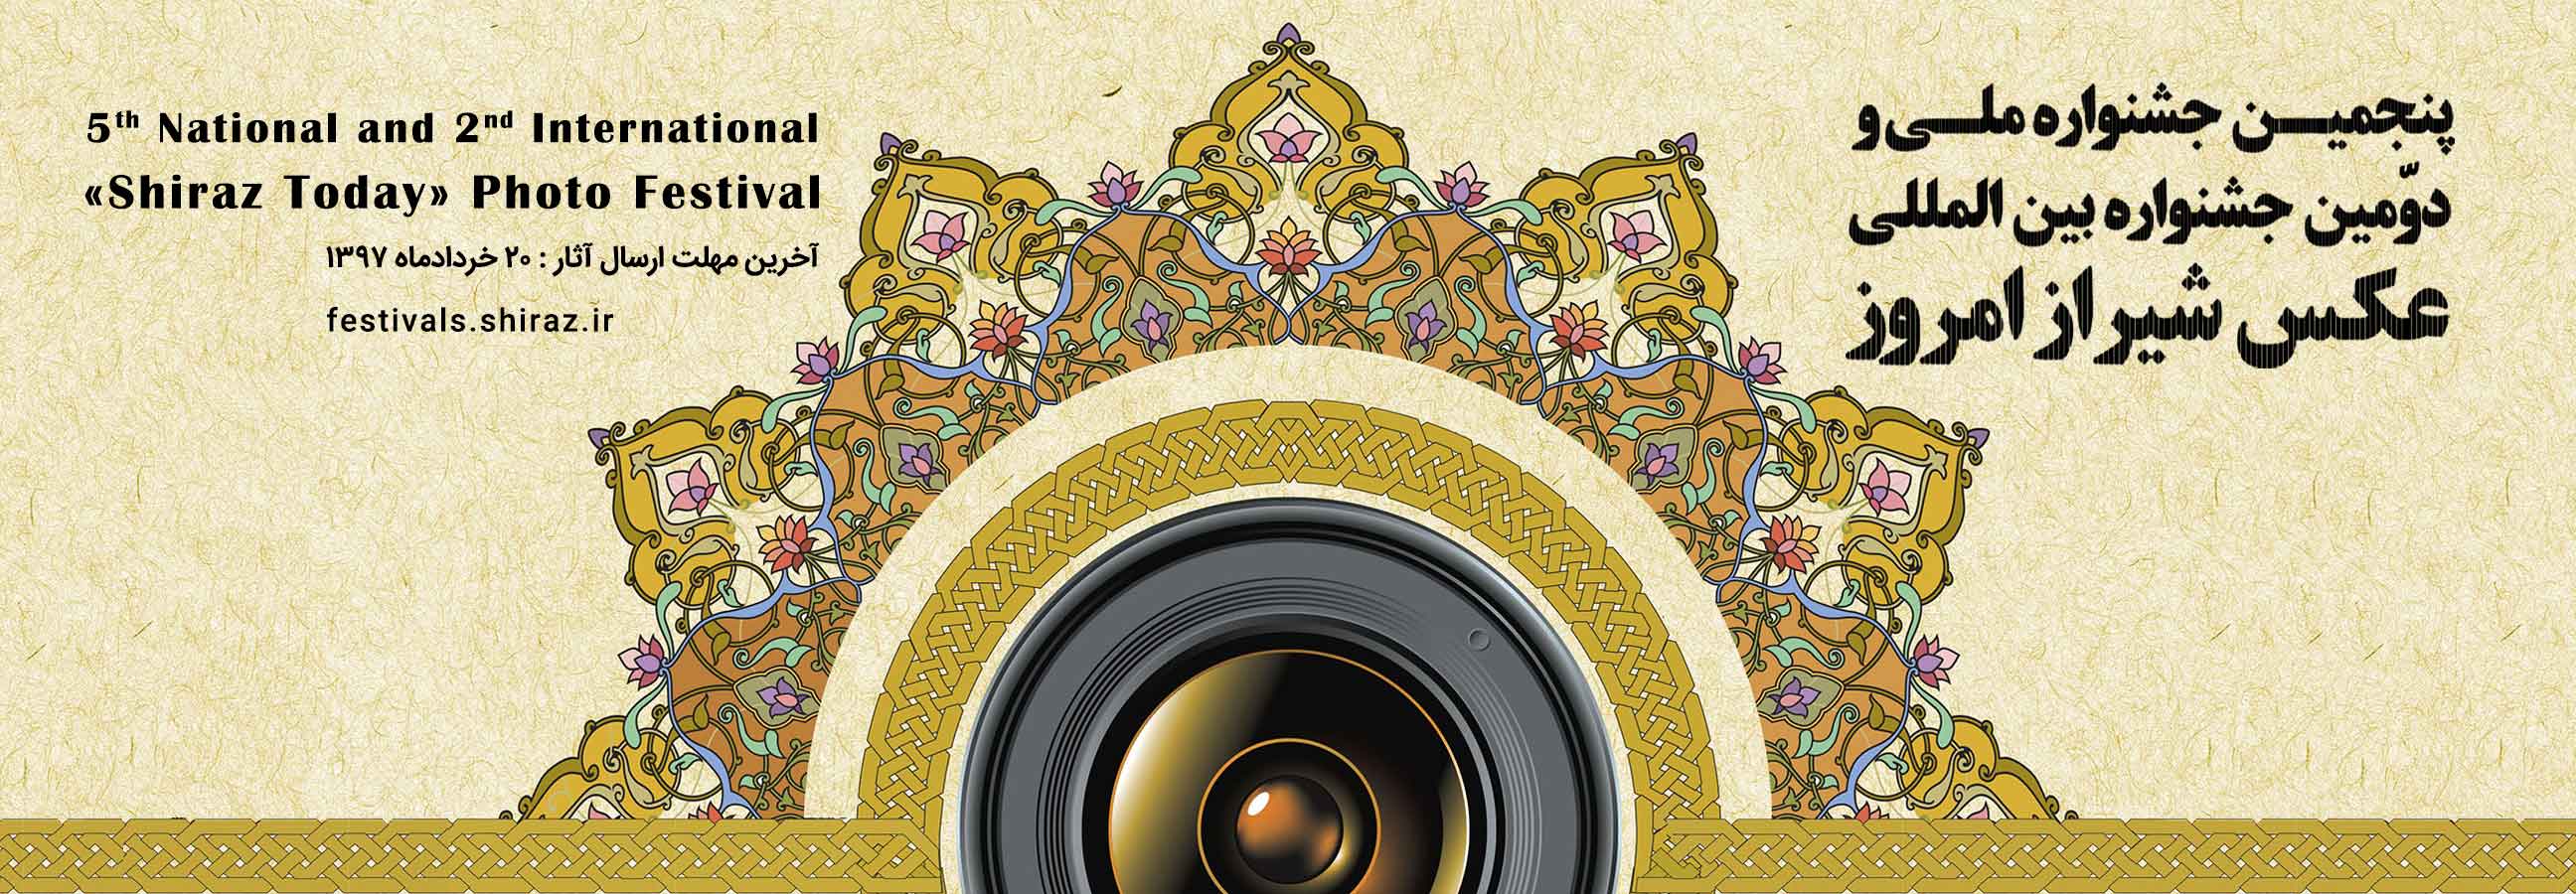 فراخوان پنجمین جشنواره ملی و دومین جشنواره بین المللی عکس «شیراز امروز»